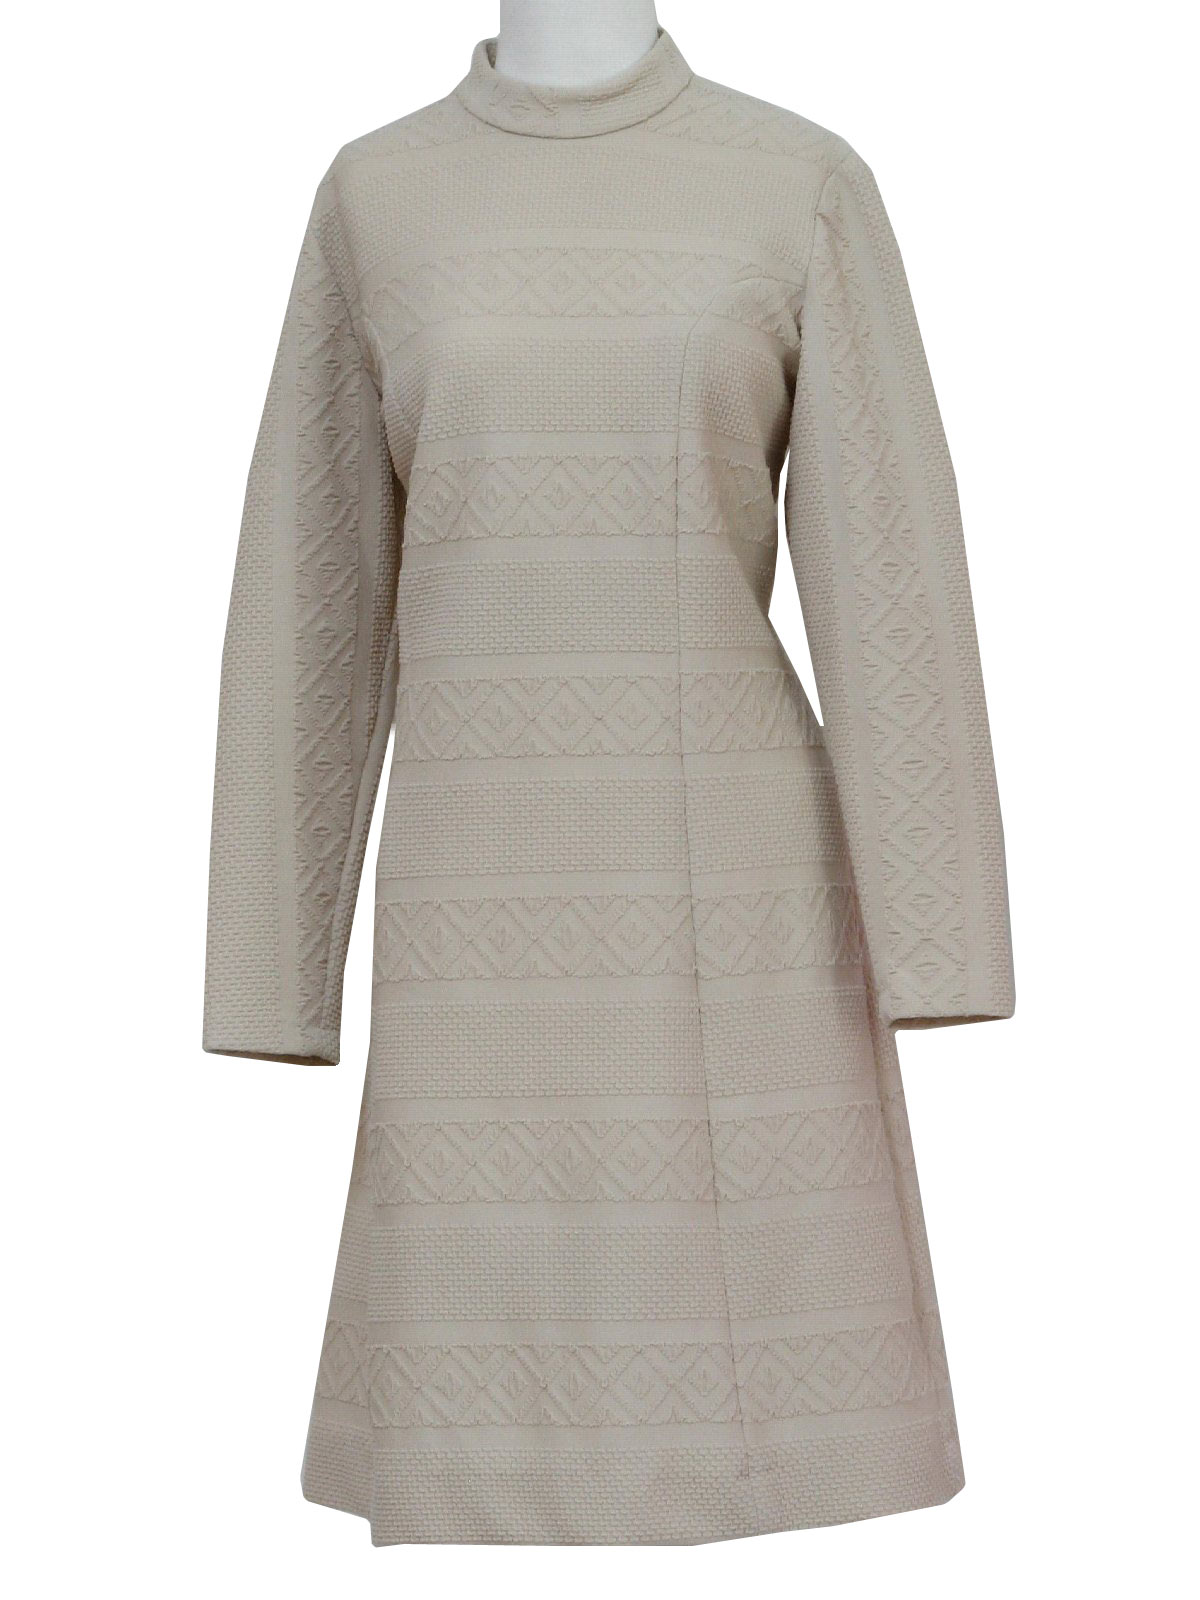 1970 s sears knit dress 70s sears womens beige longsleeve highly ...